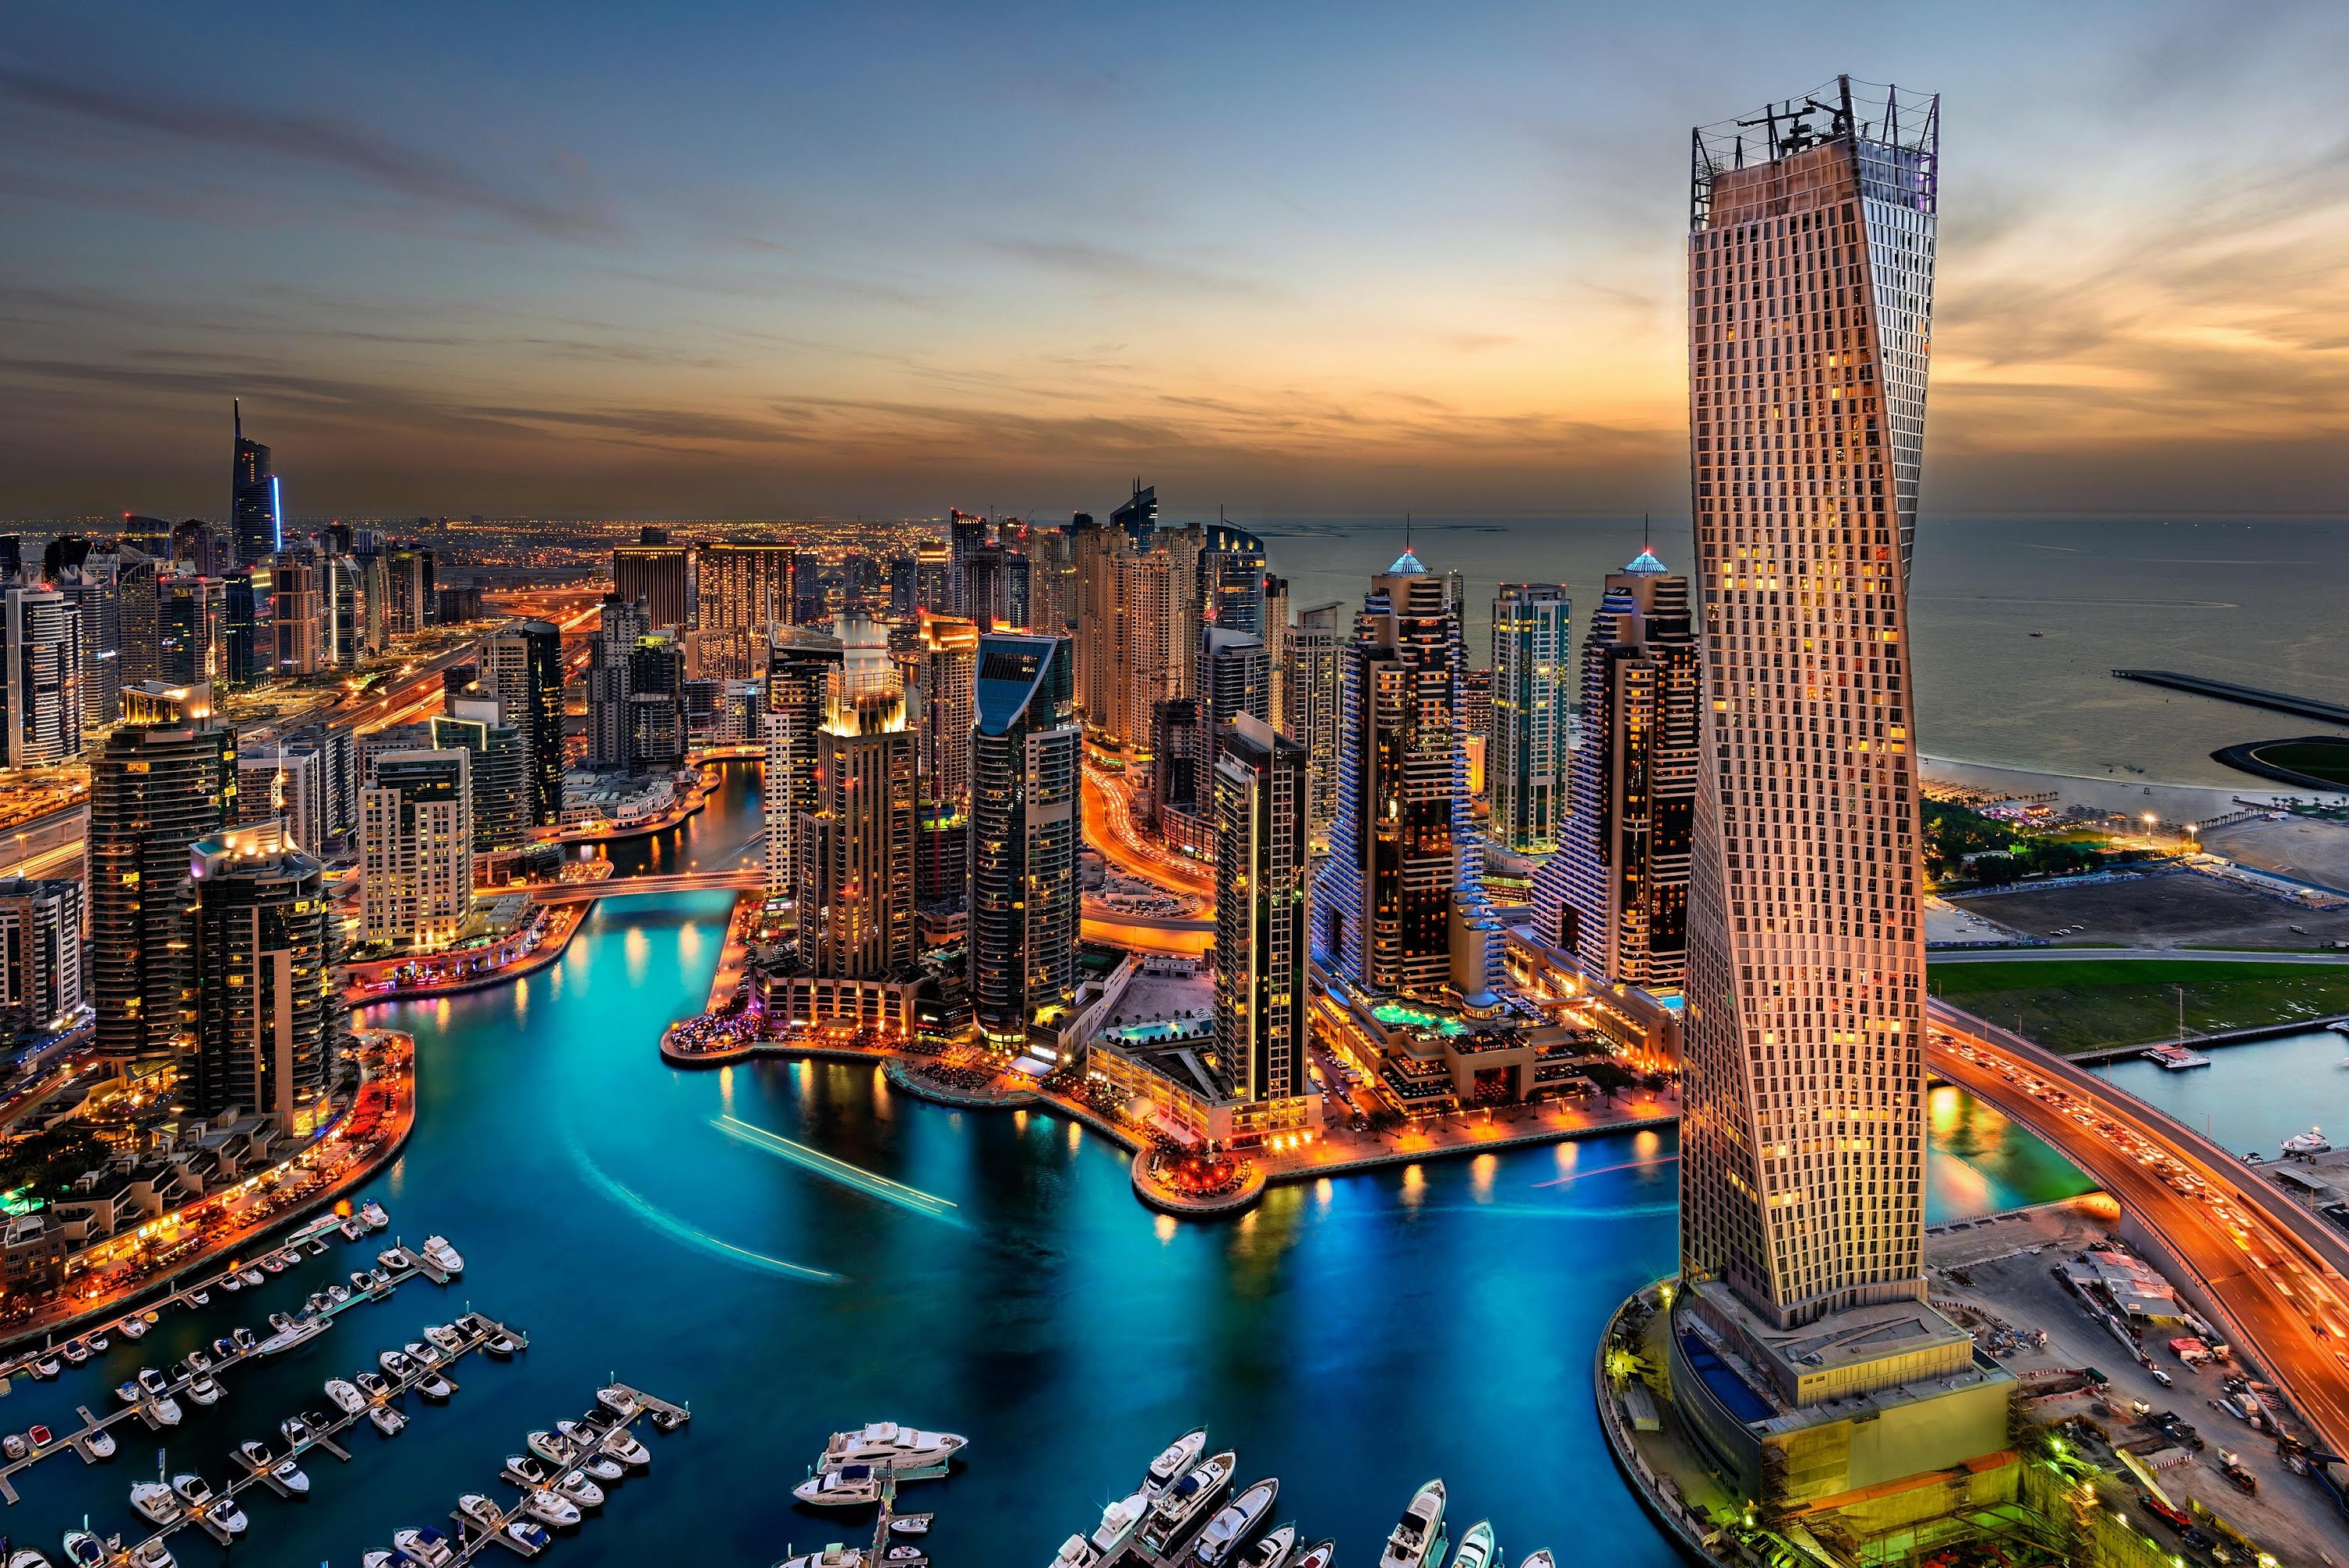 City of Emirates Dubai